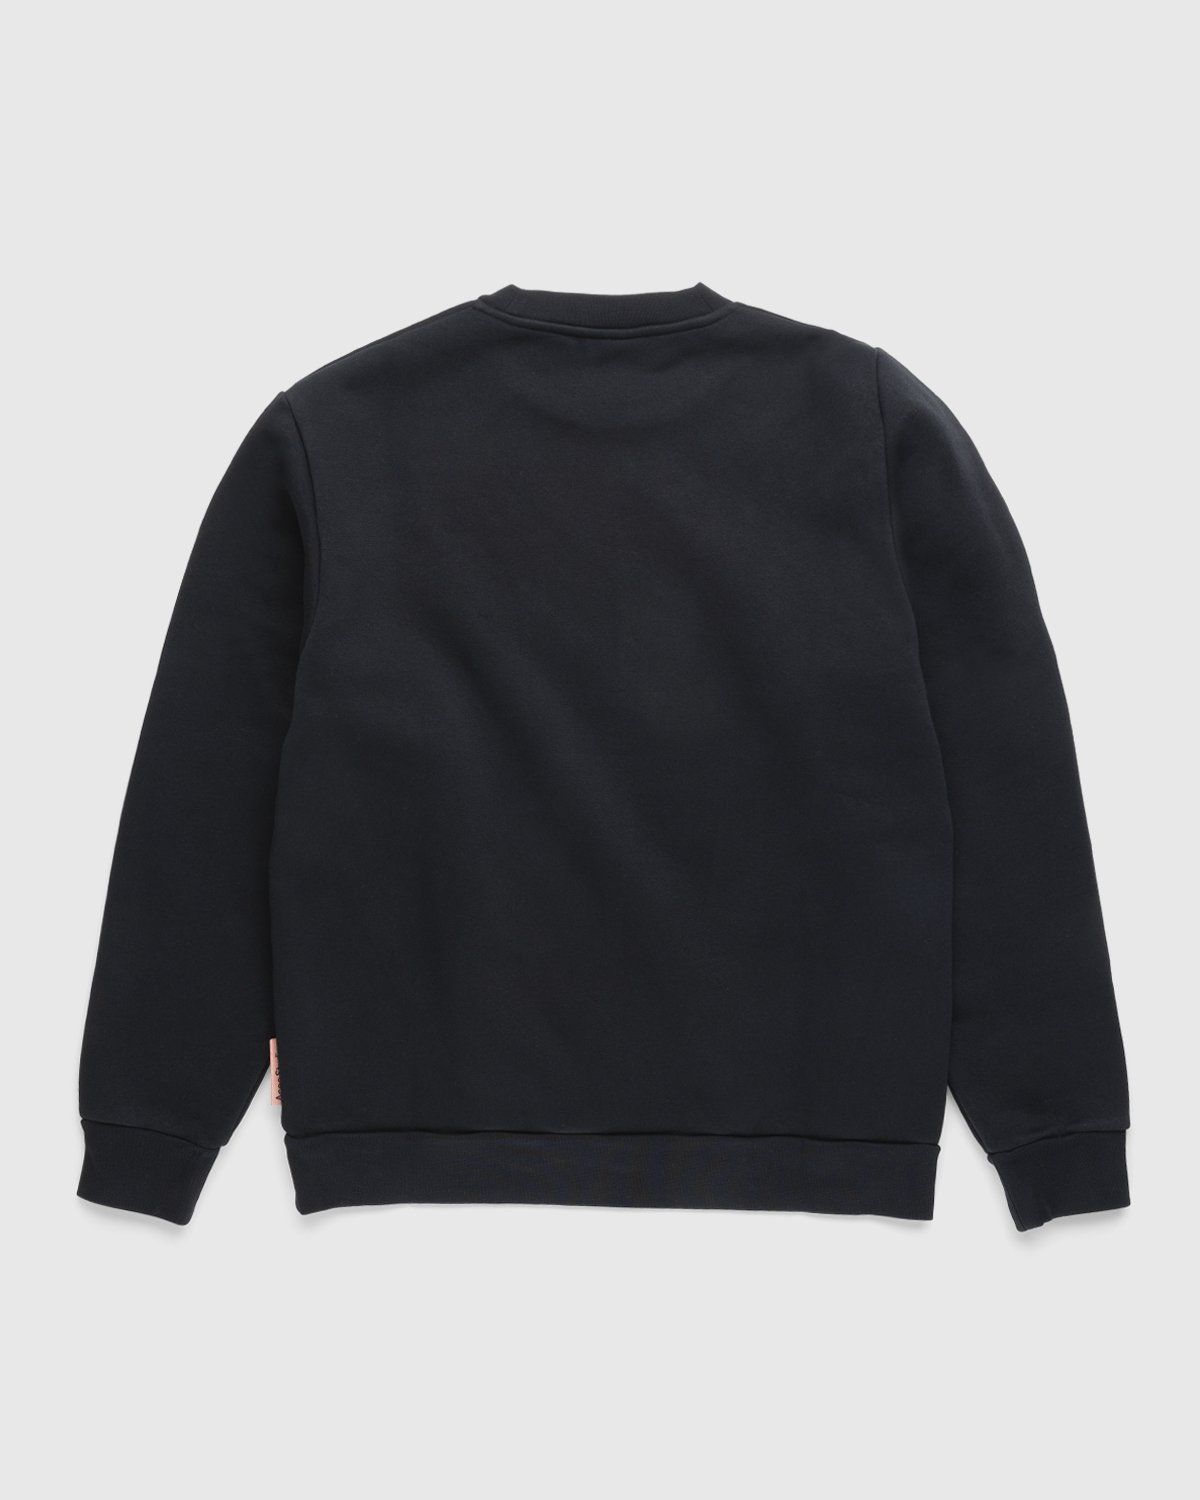 Acne Studios - Brushed Sweatshirt Black - Clothing - Black - Image 2